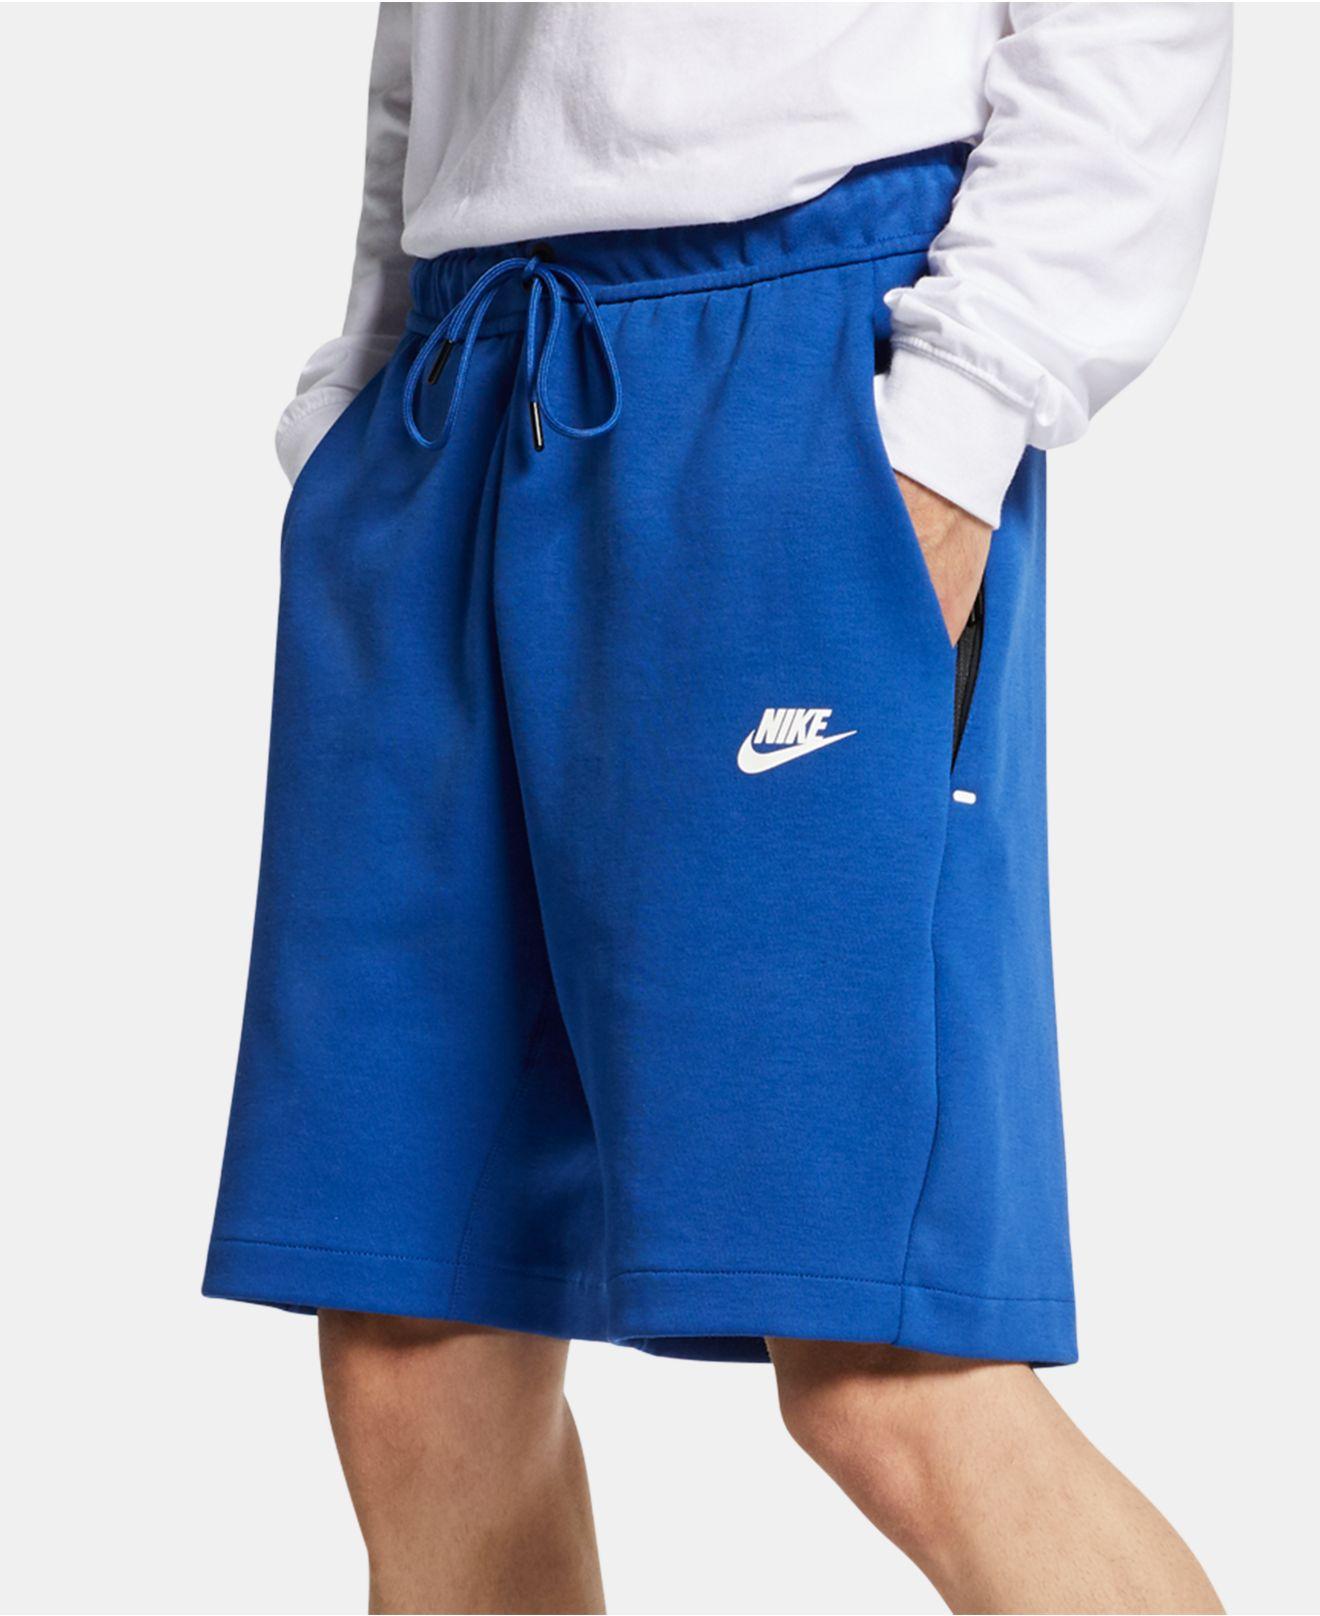 Nike Sportswear Tech Fleece Shorts in Blue for Men - Lyst